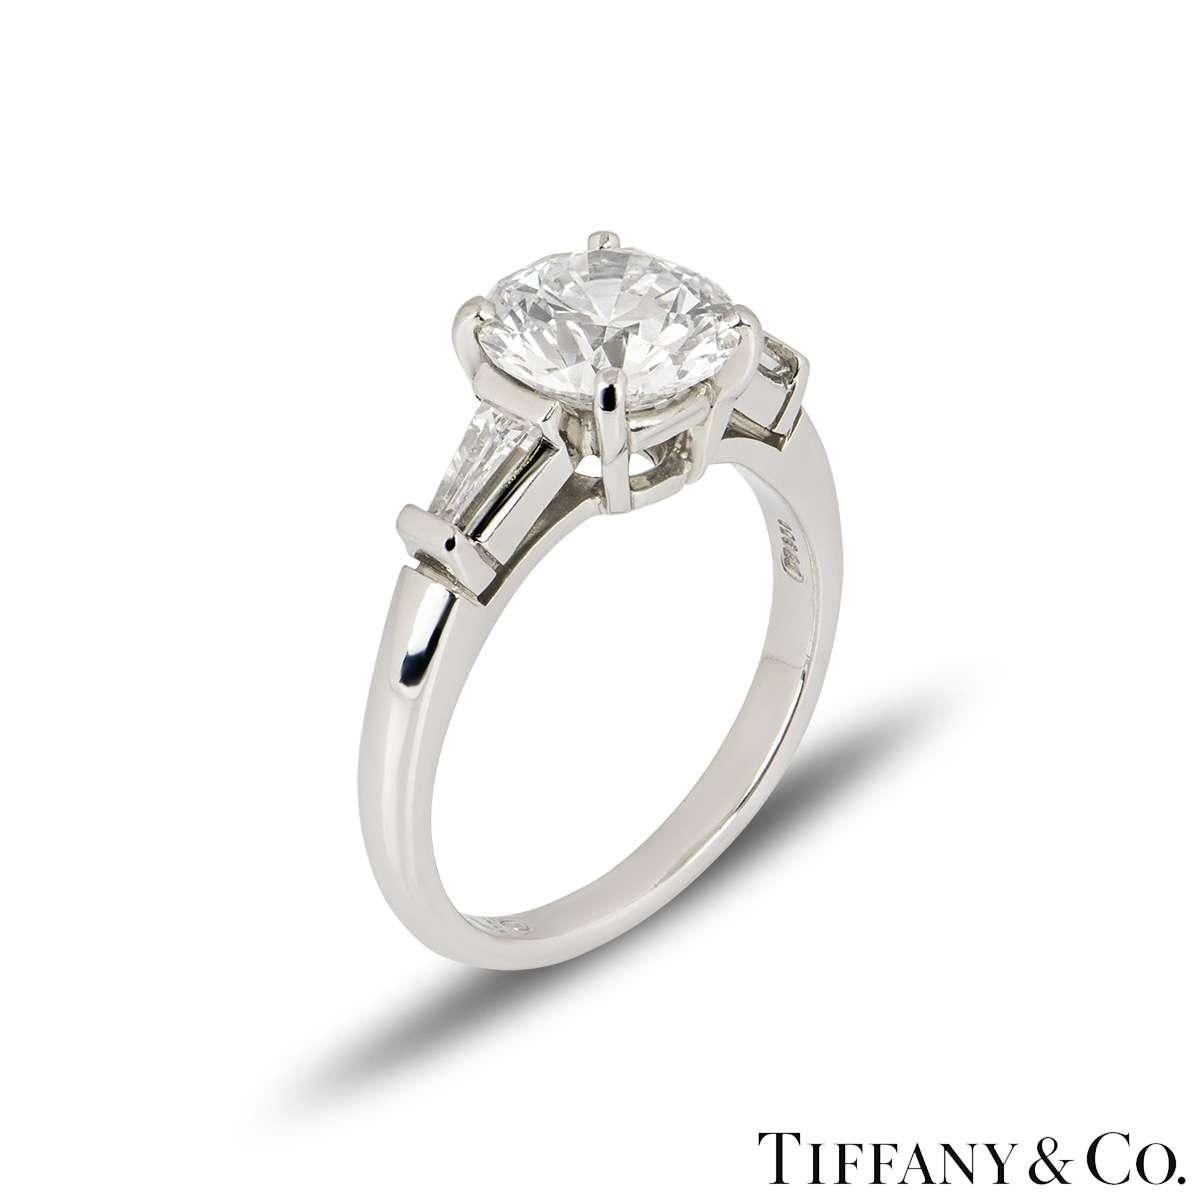 Une magnifique bague de fiançailles en diamant et platine de Tiffany & Co. de la collection Three Stone. La bague comprend un diamant rond de taille brillant dans une monture à 4 griffes pesant 2,10ct, de couleur E et de pureté VS1. Il est flanqué